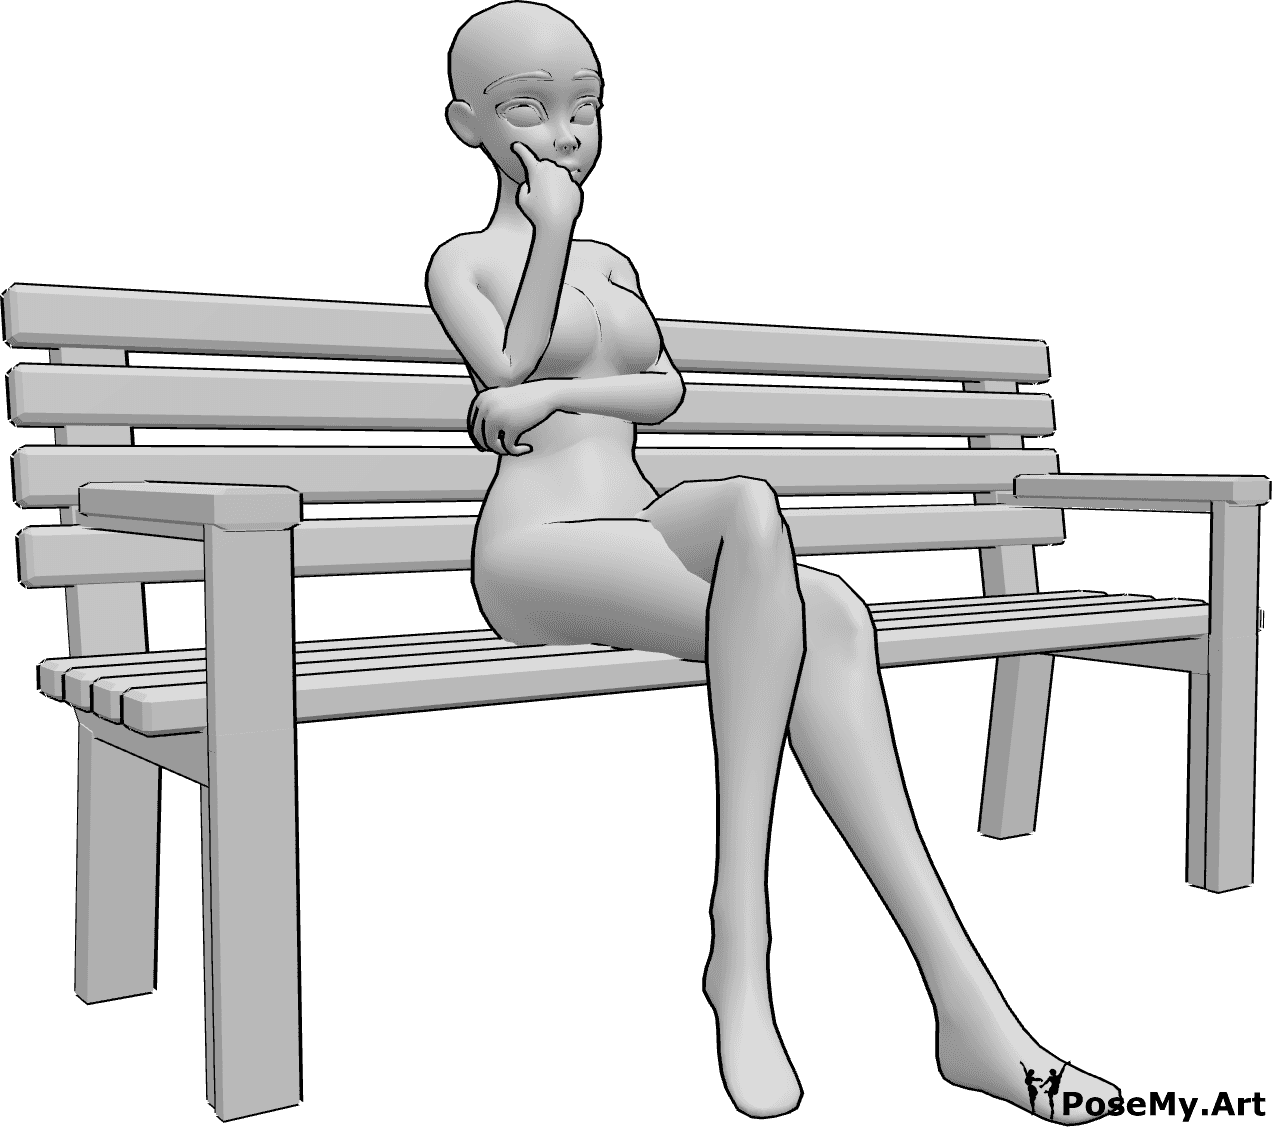 Riferimento alle pose- Posa della panca da seduti in stile anonimo - La donna Anime è seduta da sola su una panchina, ha le gambe incrociate e guarda in avanti, pensando